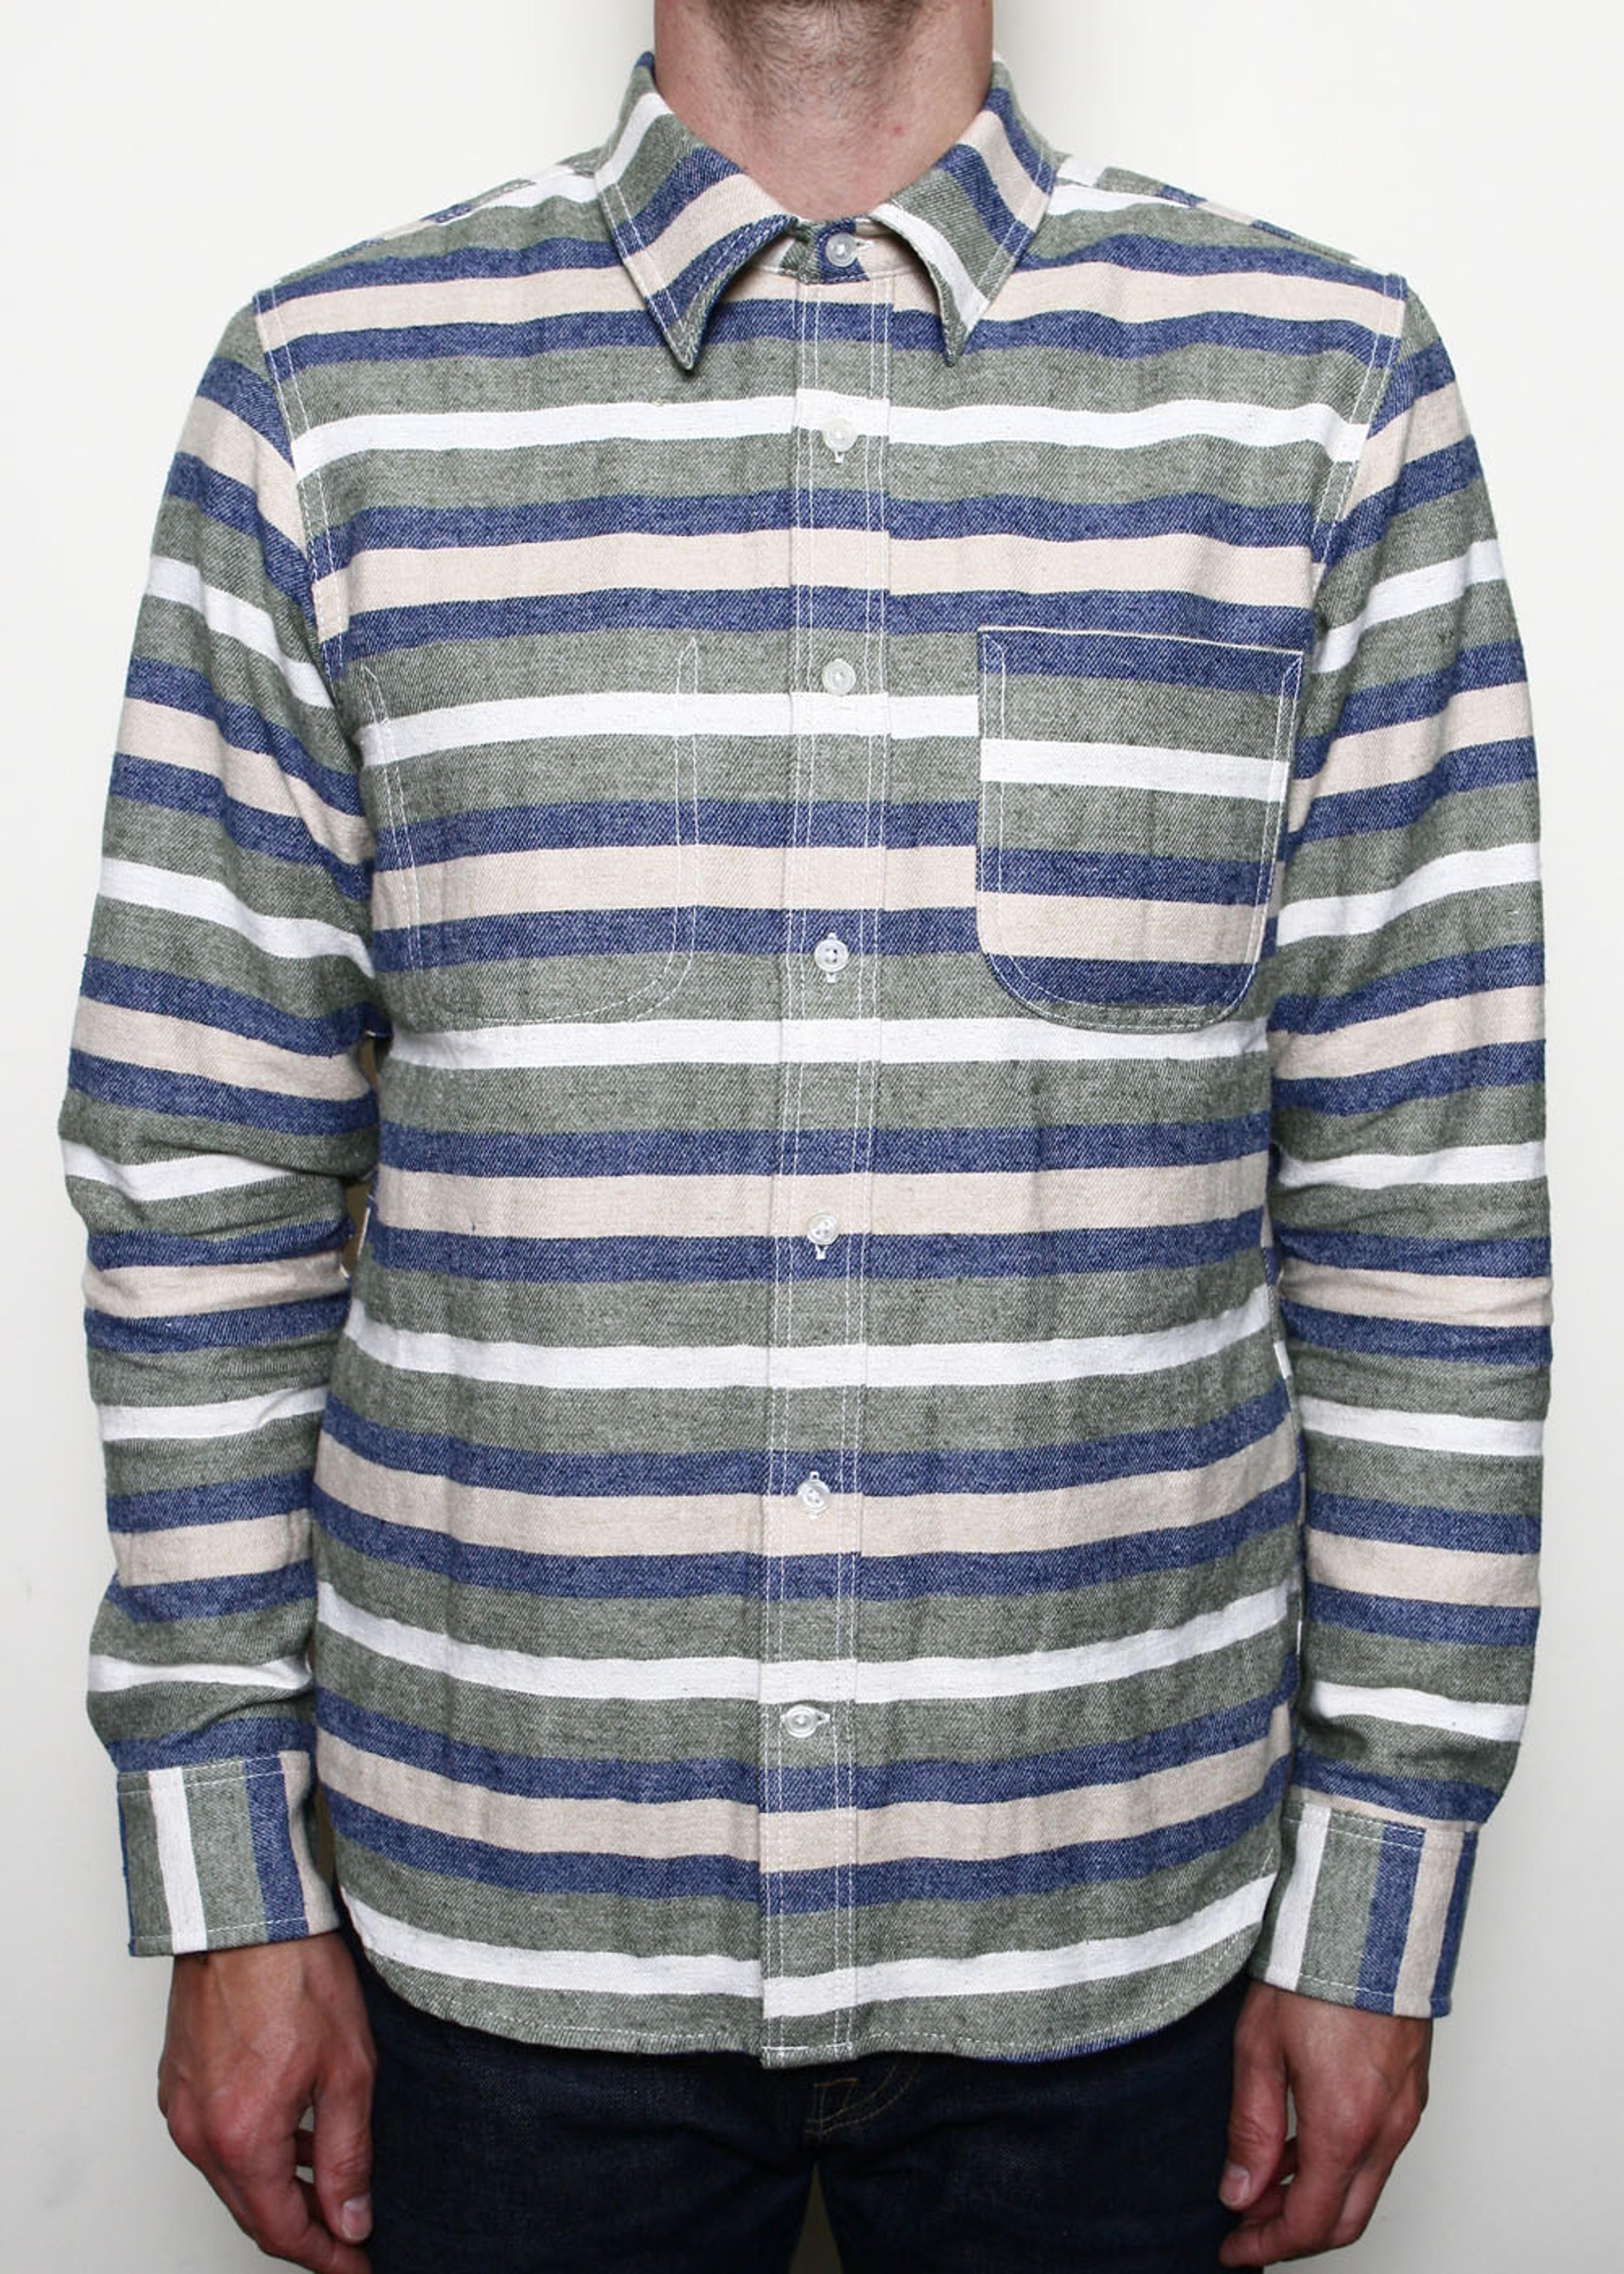 Jumper Shirt // Olive Stripe - S